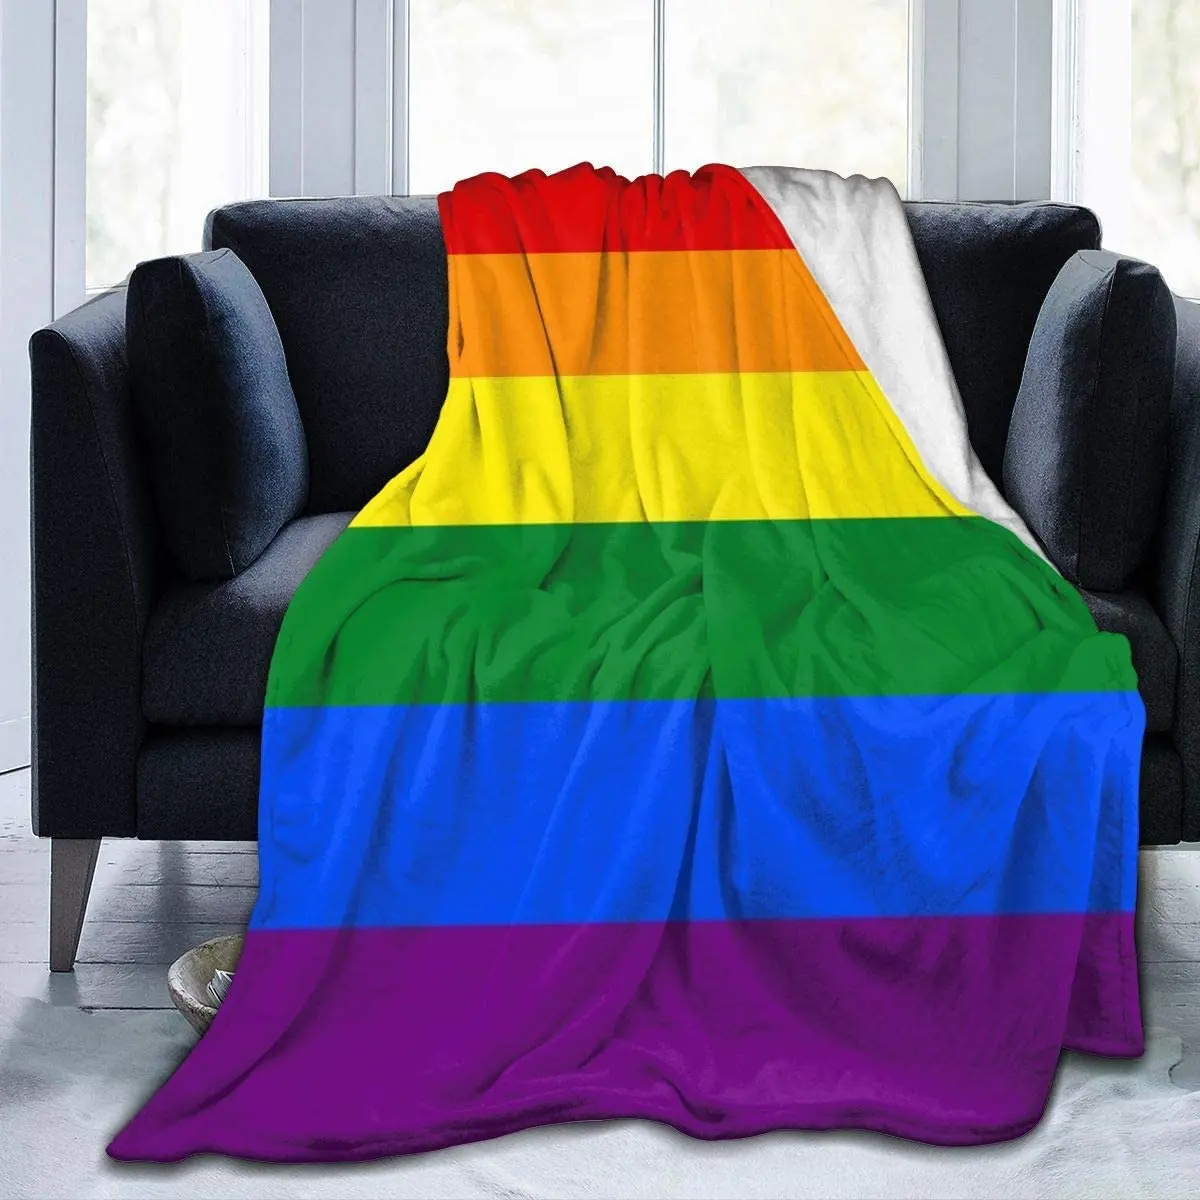 

ЛГБТ Радужный Флаг, мягкое покрывало, легкое Фланелевое Флисовое одеяло, покрывало для дивана, кровати, дивана, путешествий, кемпинга для де...